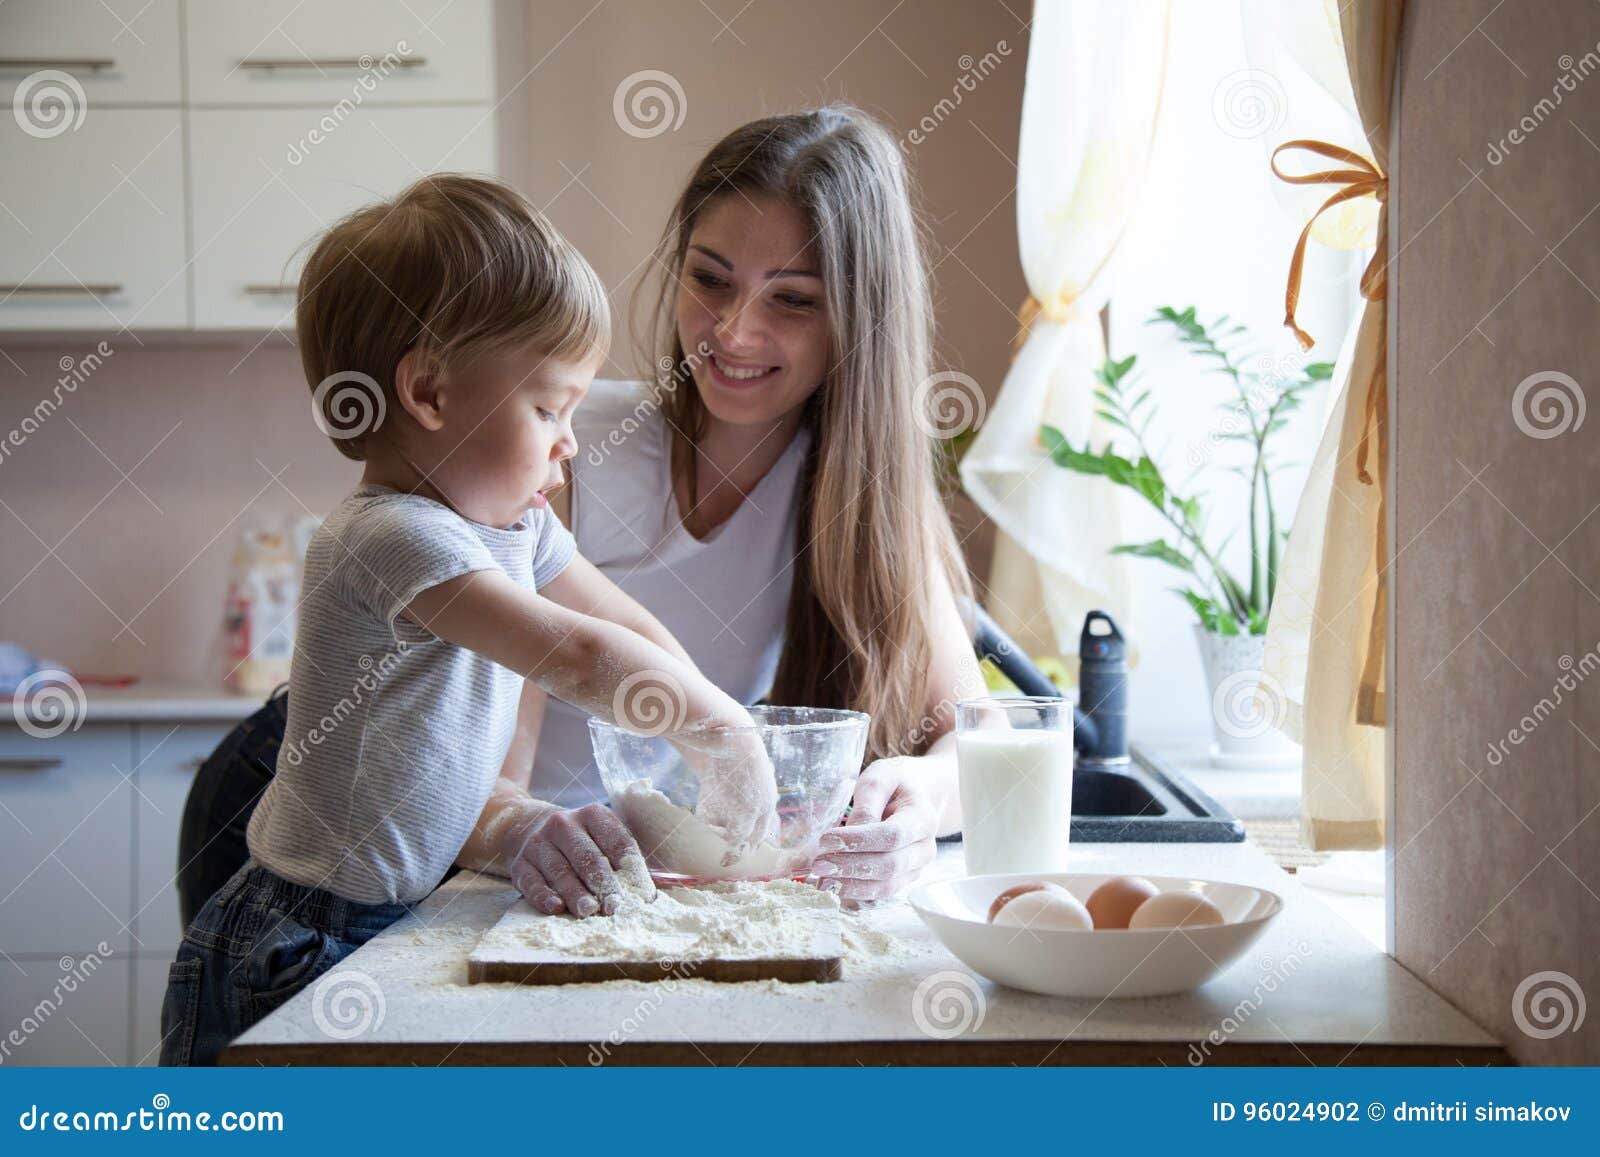 Мама с сыном русская кухня. Фотосессия мама с сыном на кухне. Мама готовит торт с сыном. Торт готовка мама. Торт для мамы и сына.